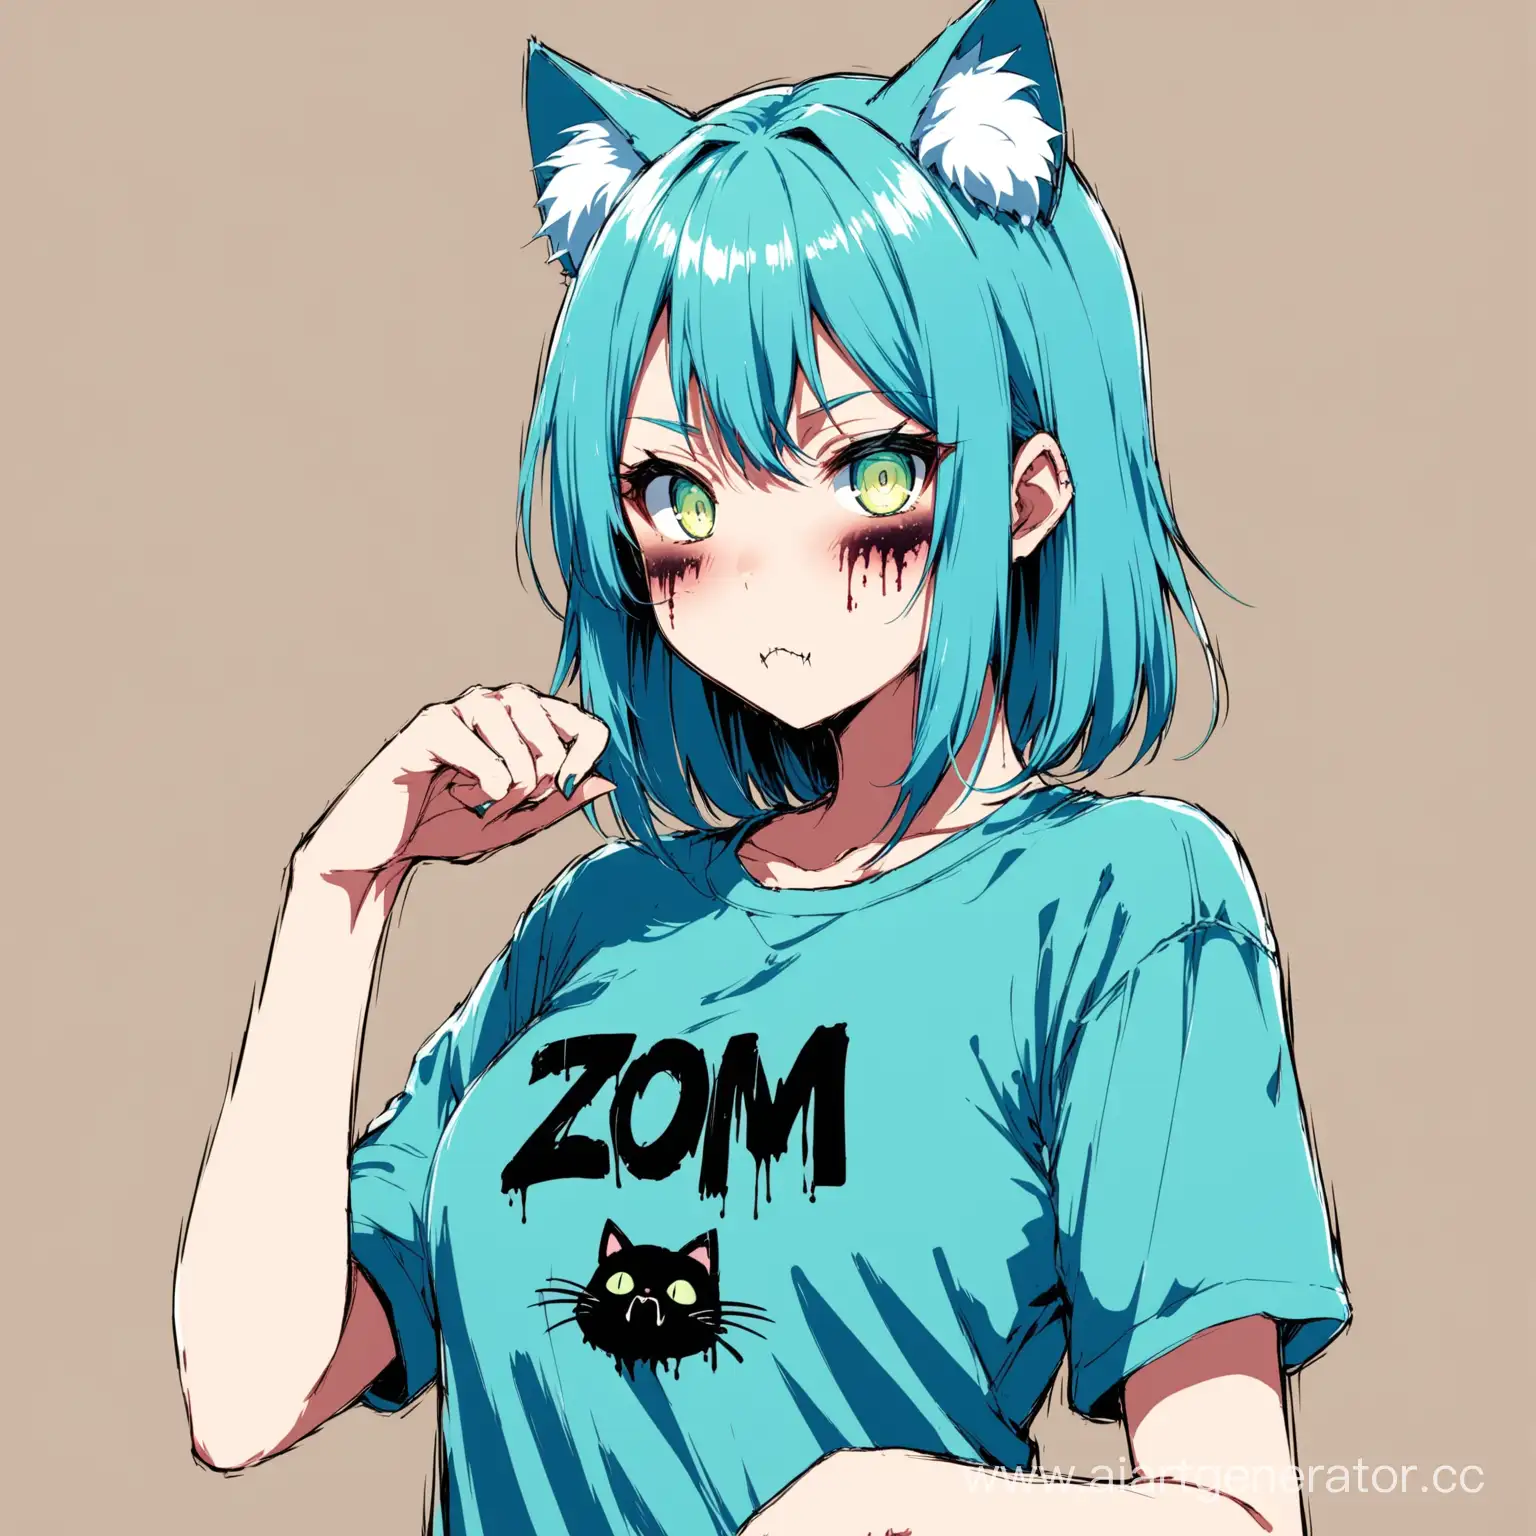 Аниме девушка с кошачьими ушками,голубыми волосами на майке у неё написано ZOM 